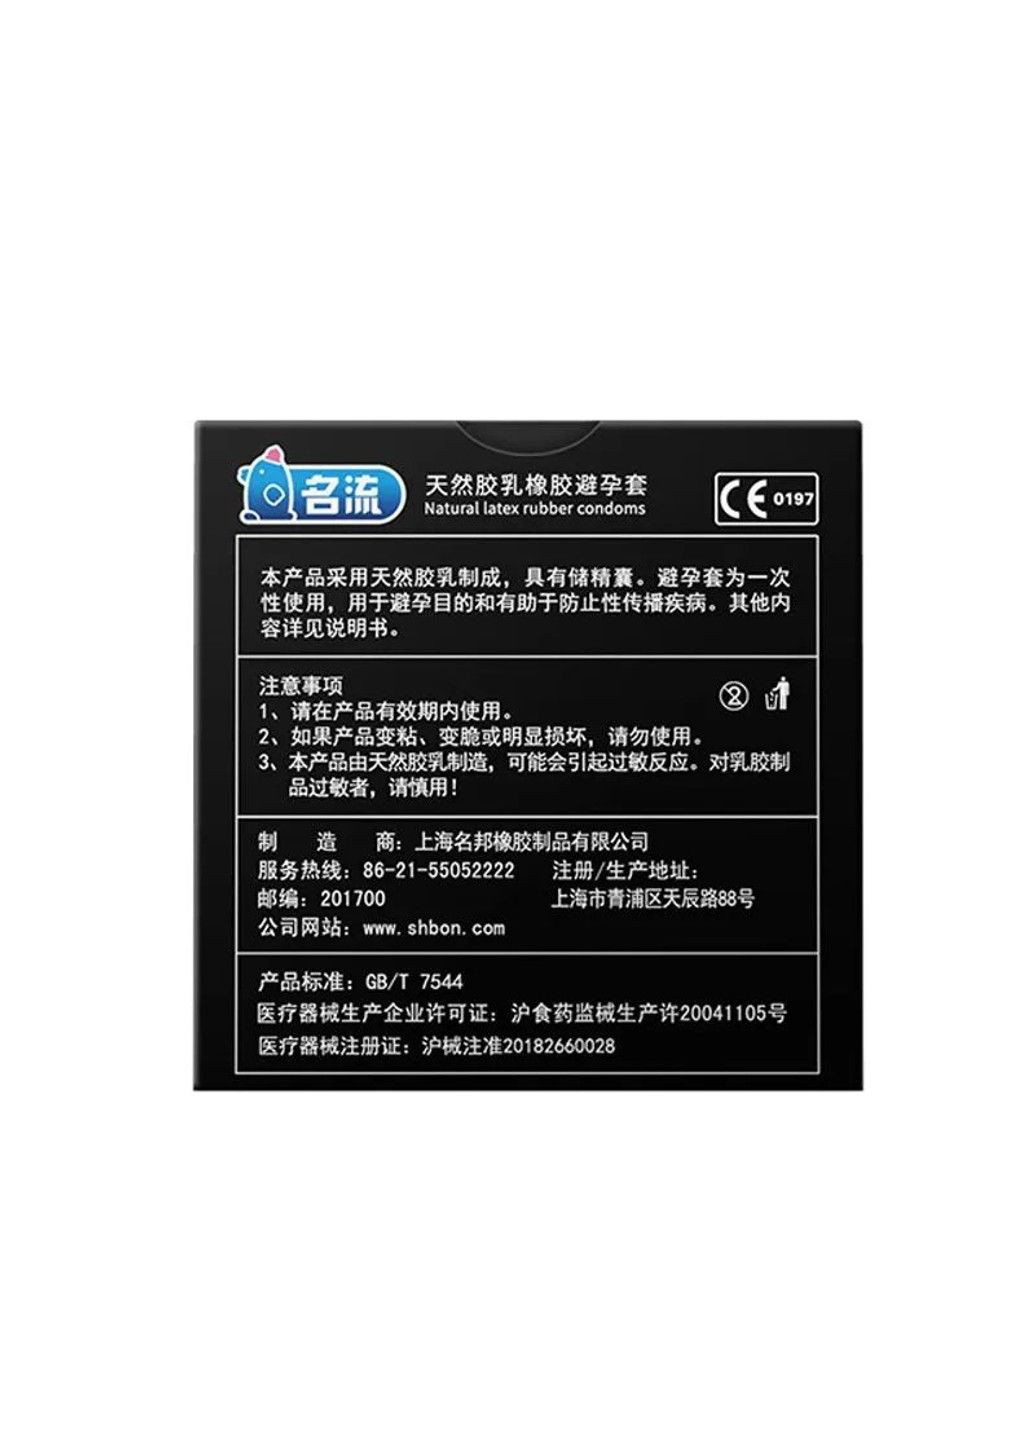 Рельефные презервативы Mingliu G 3 шт. HBM Group (284279061)